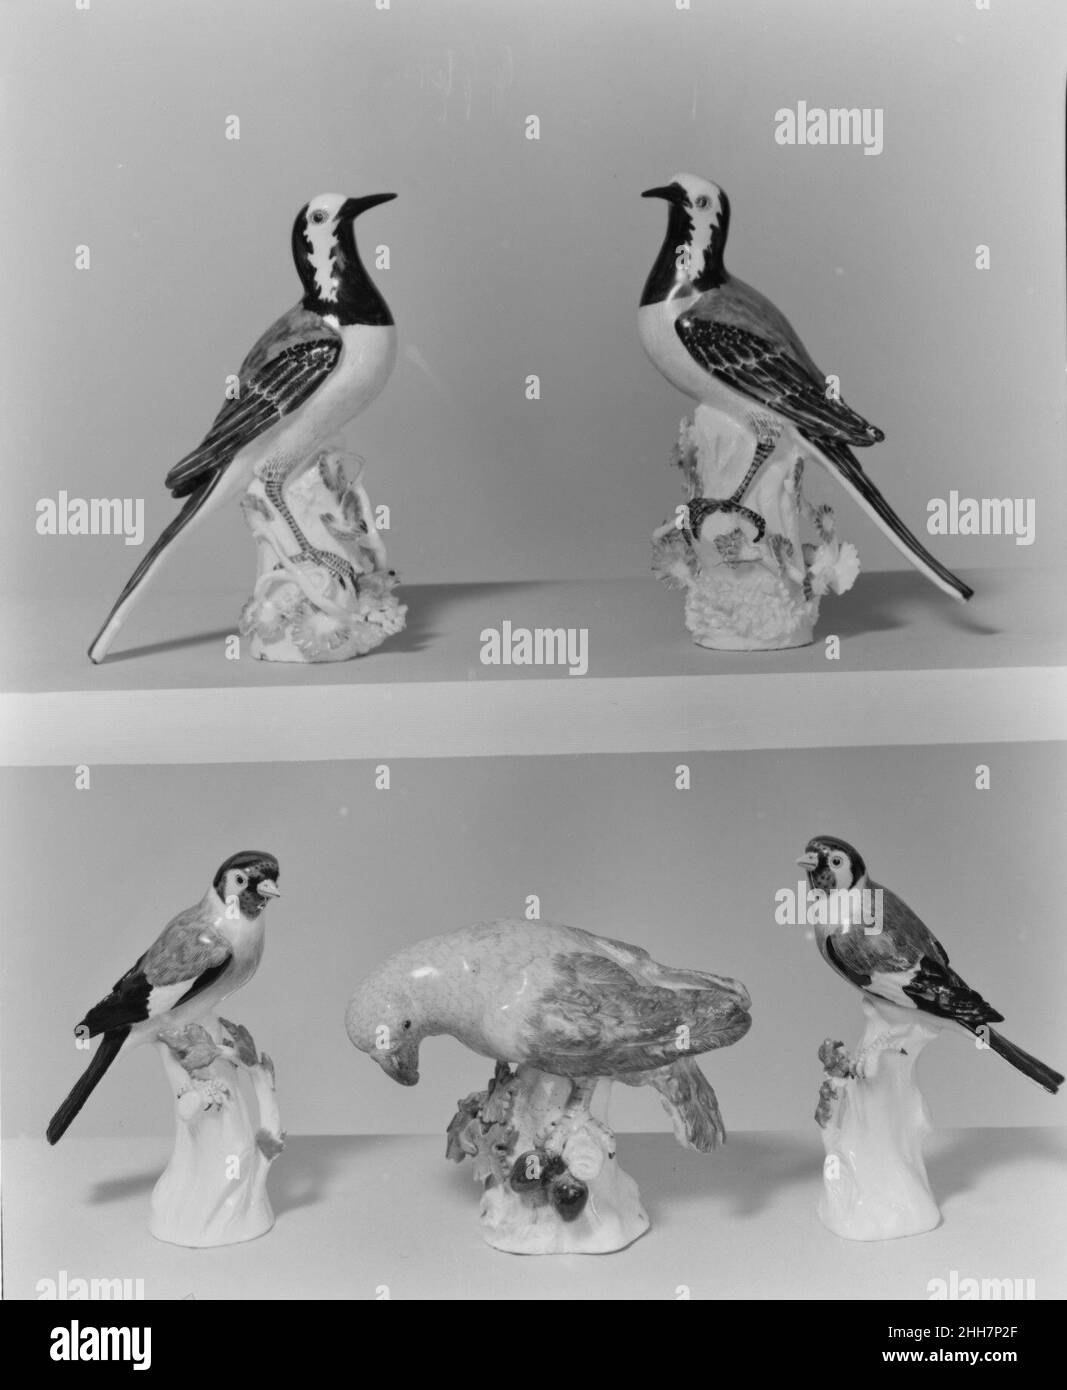 Wagtail (uno di un paio) 1733 Meissen Manufactory gli uccelli in porcellana tedesca hanno le loro origini nella tradizione principesca di mantenere collezioni di animali vivi e uccelli in menagerie e aviari, che sono stati visti come microcosmi dell'universo, e emblemi del potere reale e illuminazione. Queste collezioni spesso comprendevano uccelli esotici come pappagalli, ammirati per la loro rarità, così come specie autoctone più familiari.nel 1731 la manifattura Meissen iniziò un nuovo genere di porcellana europea, producendo diverse centinaia di uccelli e animali in porcellana di dimensioni naturali e quasi vitali, molti destinati a t. Foto Stock